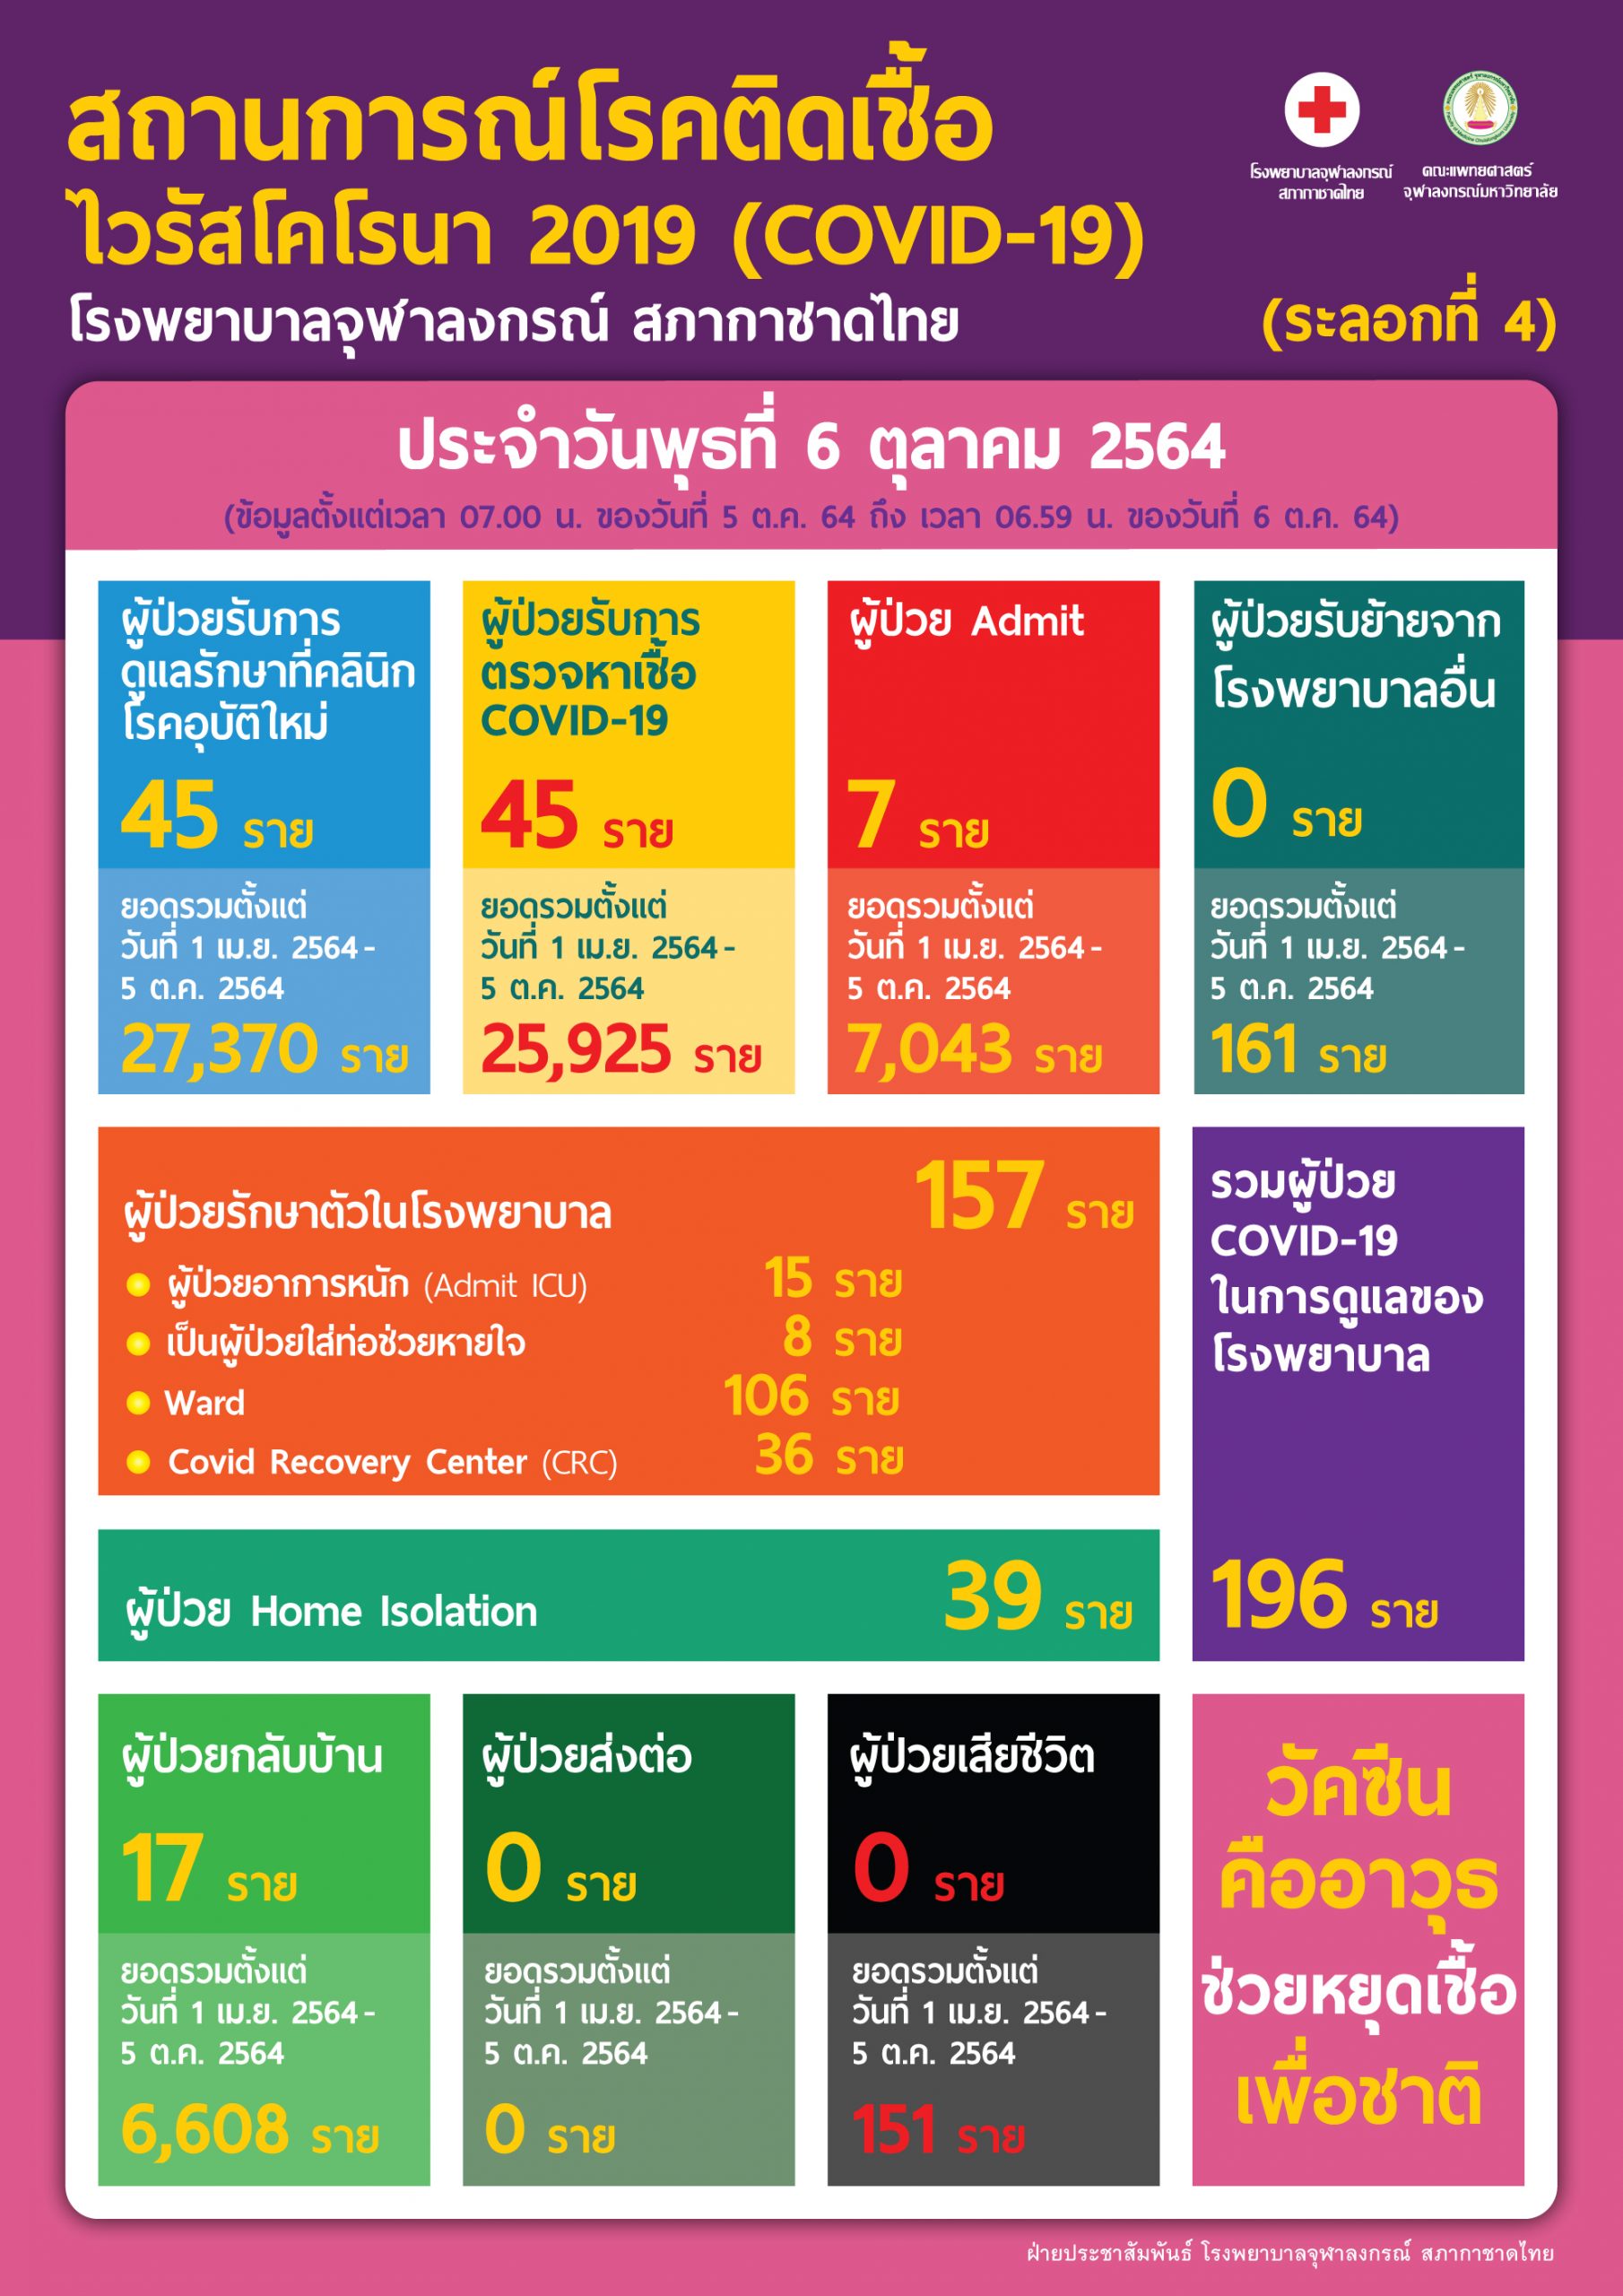 สถานการณ์โรคติดเชื้อไวรัสโคโรนา 2019 (COVID-19) (ระลอกที่ 4) โรงพยาบาลจุฬาลงกรณ์ สภากาชาดไทย ประจำวันพุธที่ 6 ตุลาคม 2564